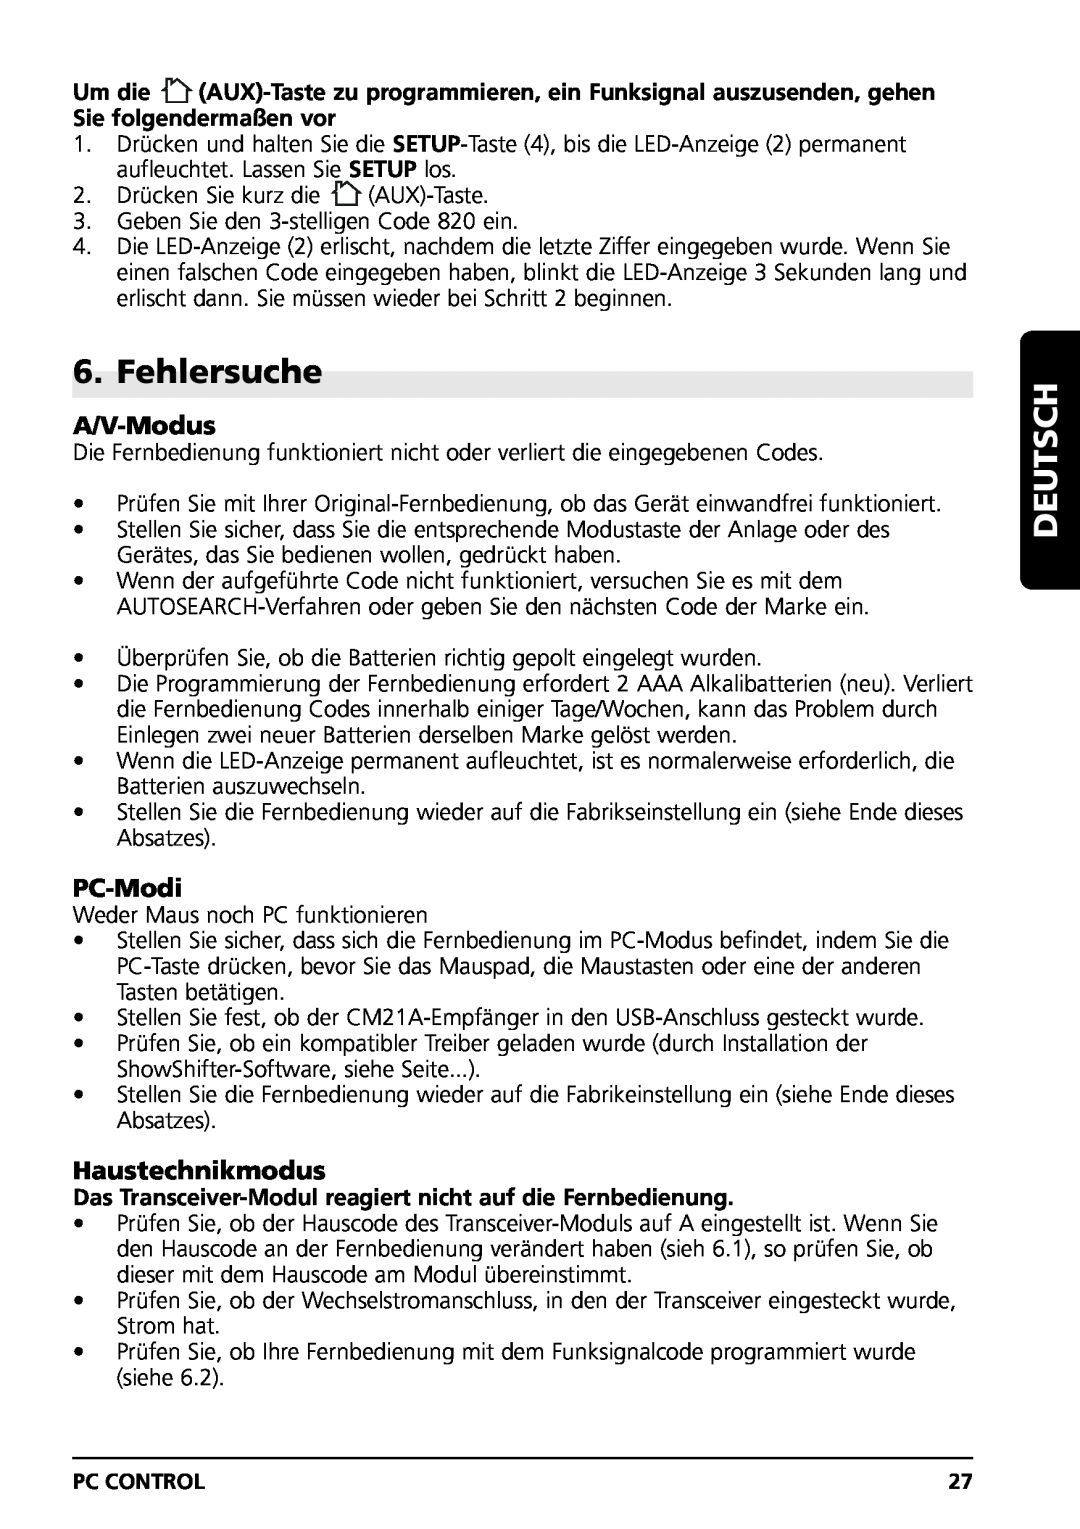 Marmitek PC CONTROL owner manual Fehlersuche, A/V-Modus, PC-Modi, Haustechnikmodus, Deutsch 